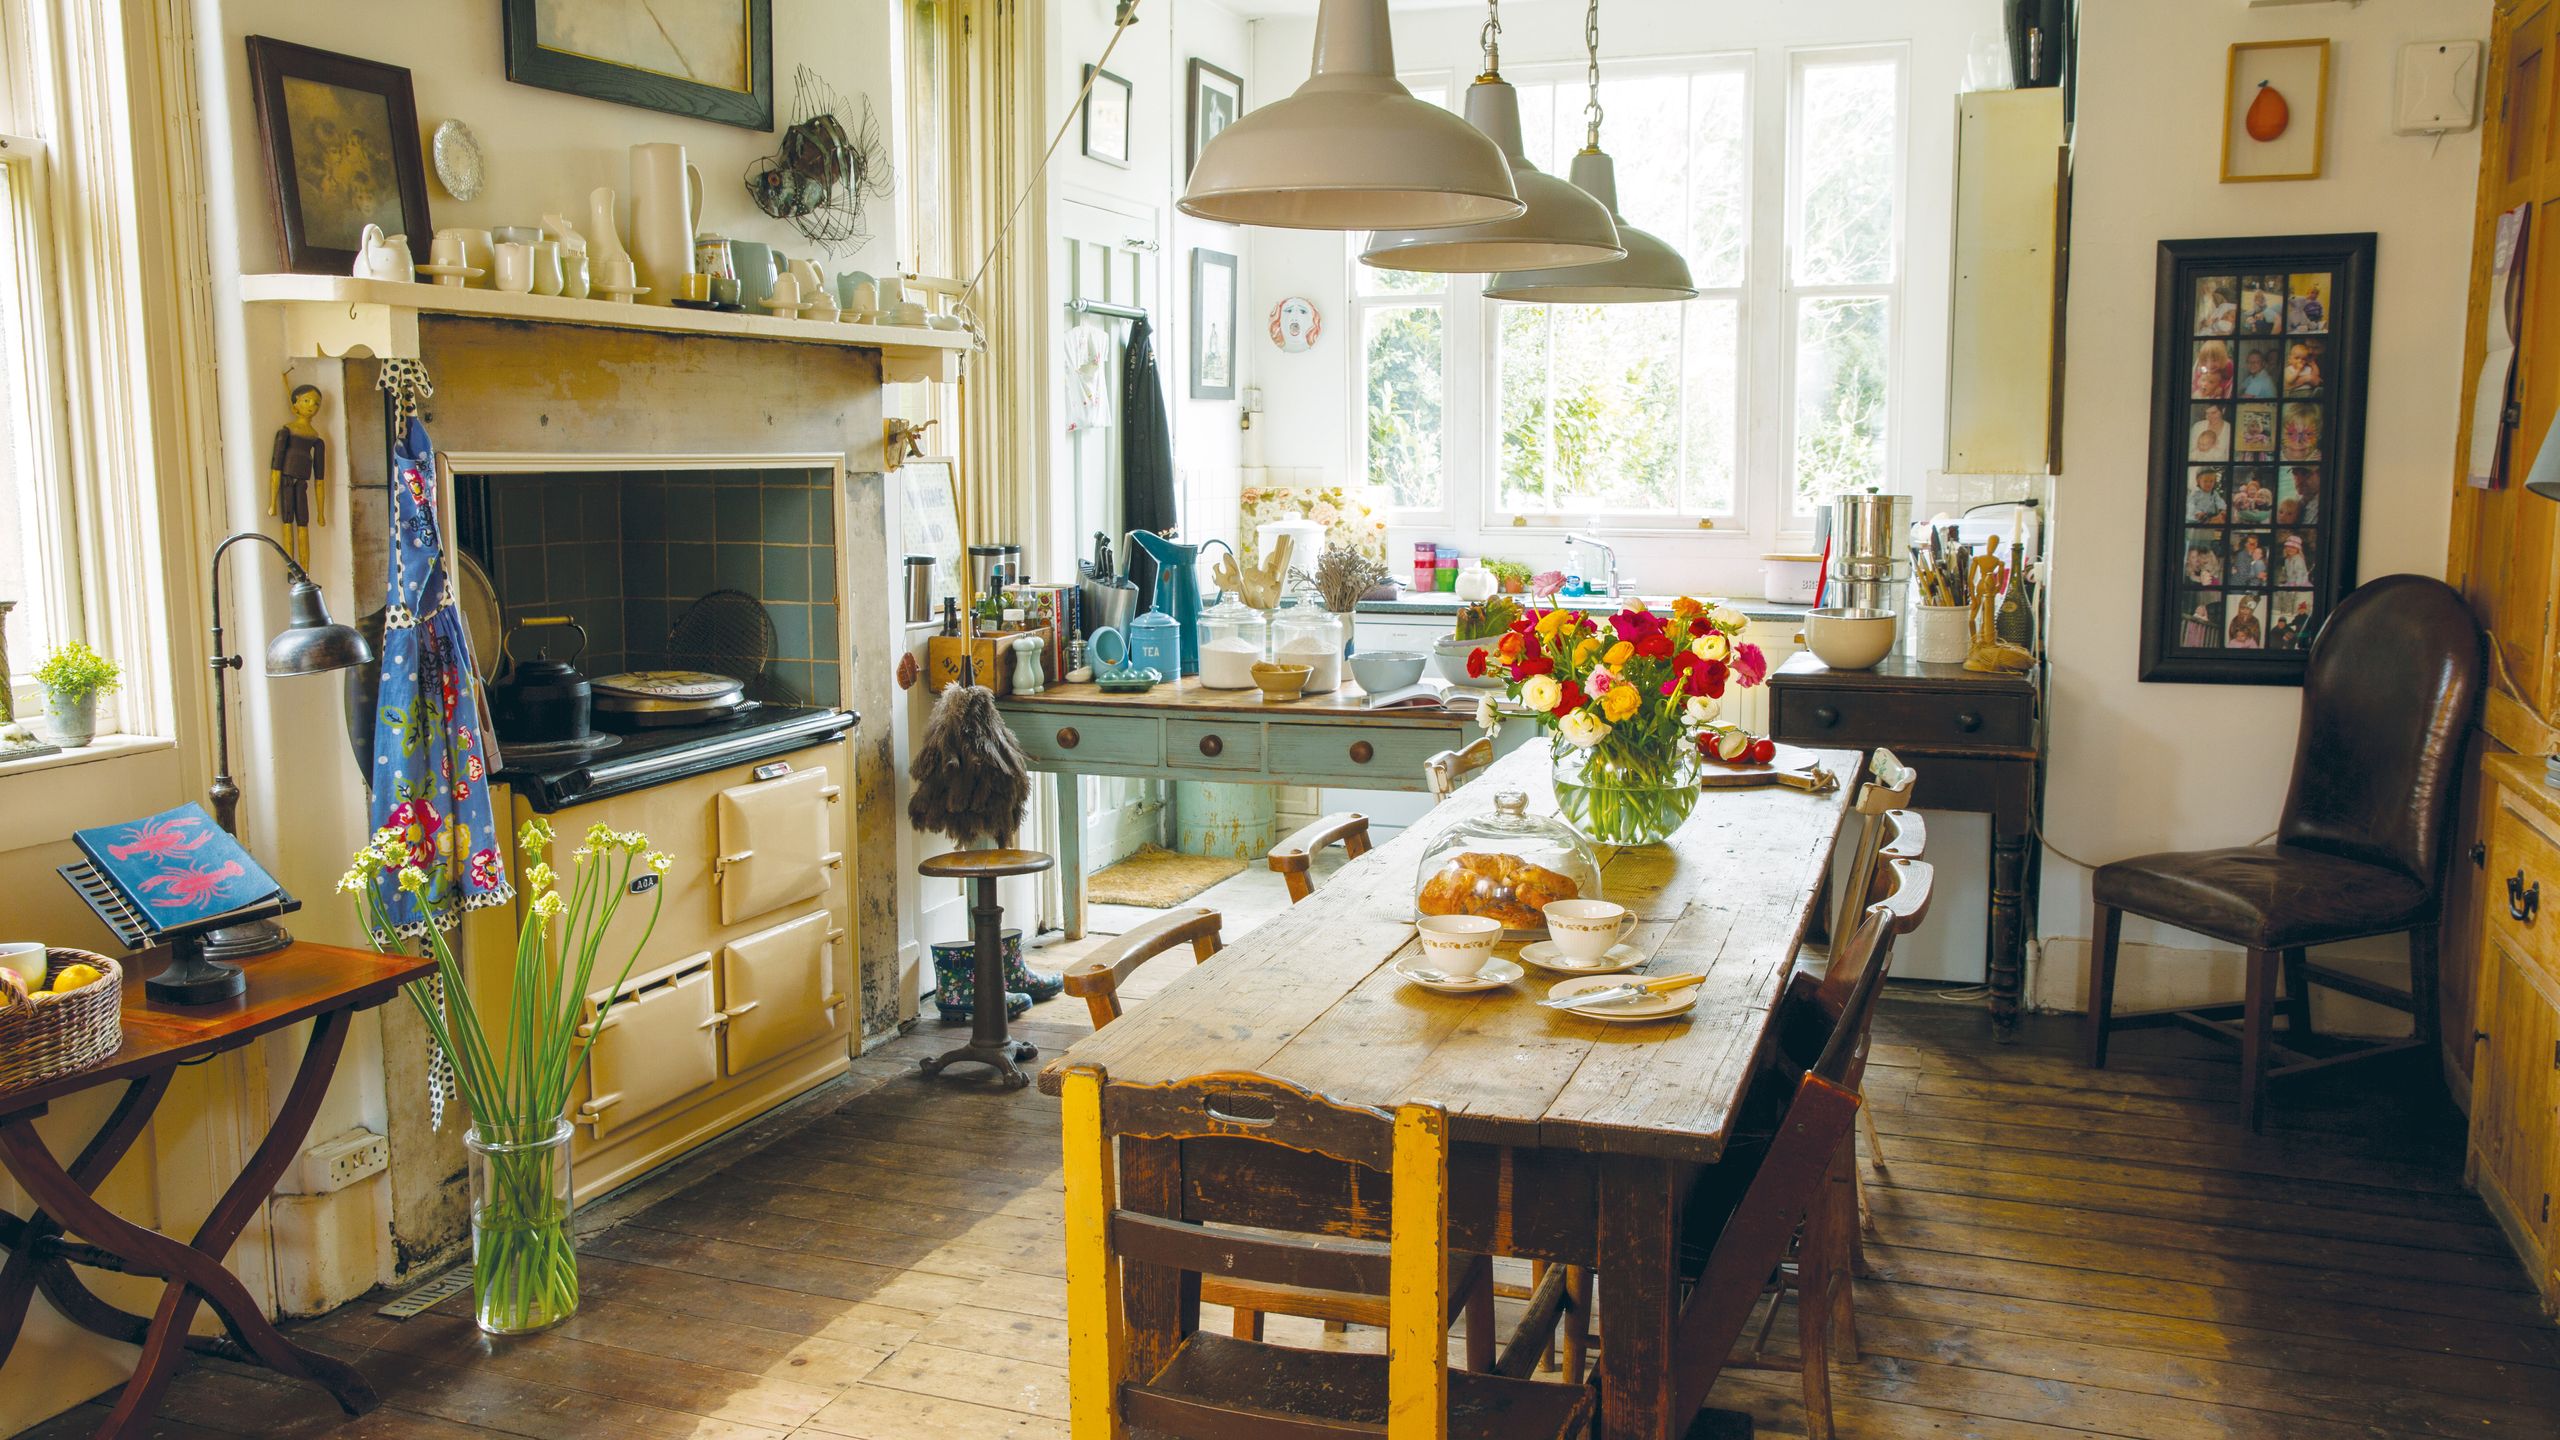  Küche im Bauernhausstil mit Vintage-Stücken in viktorianischer Villa